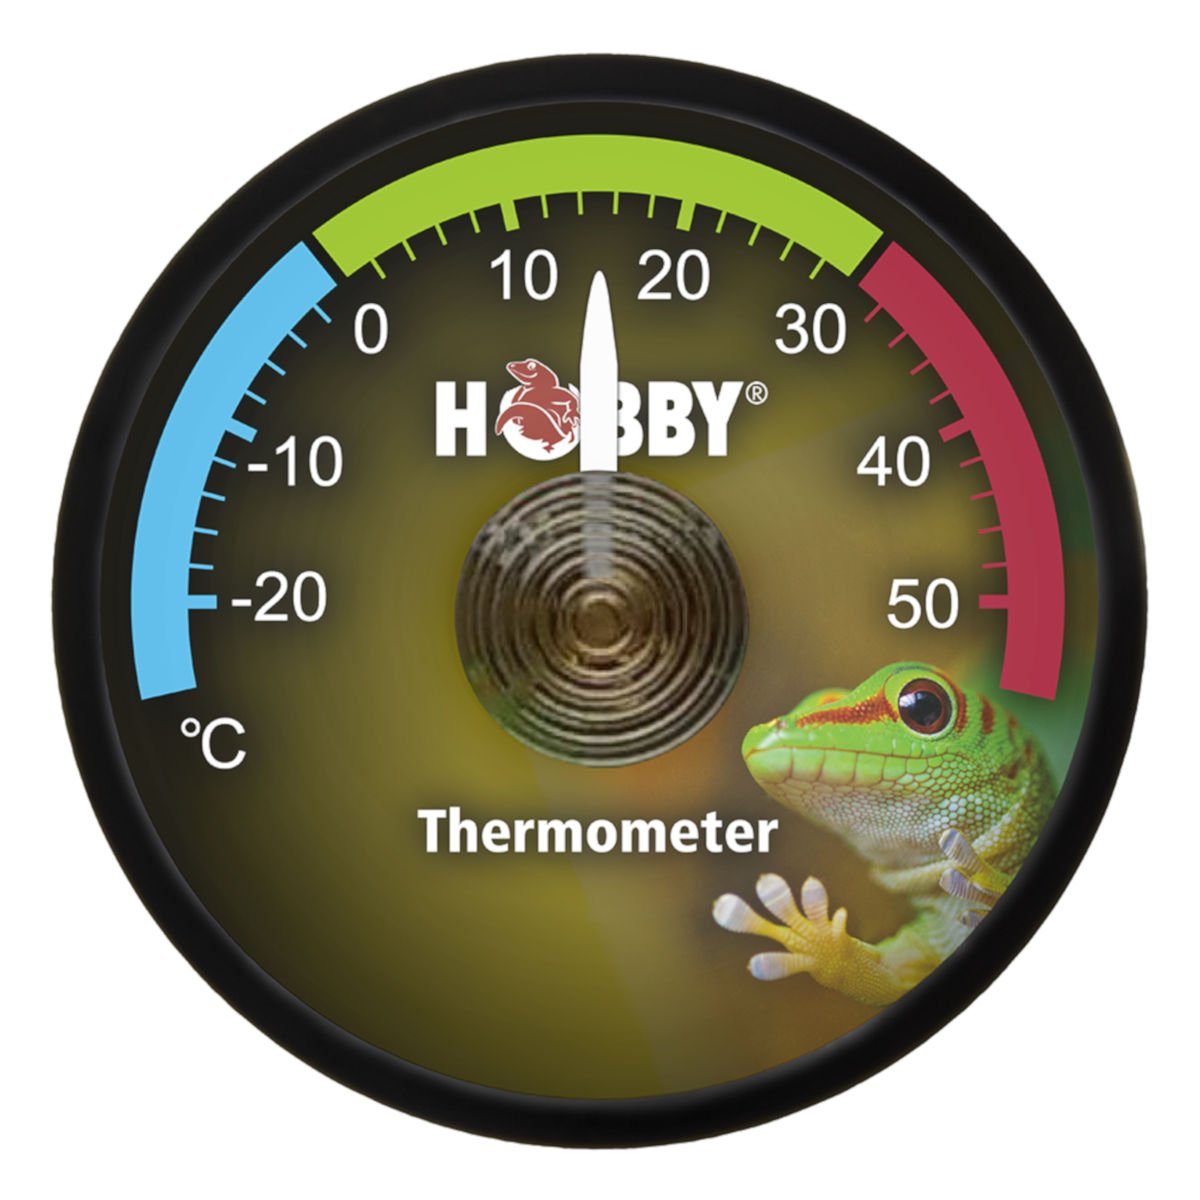 (AHT1) Thermometer/Hygrometer, Hygrometer HOBBY Hobby